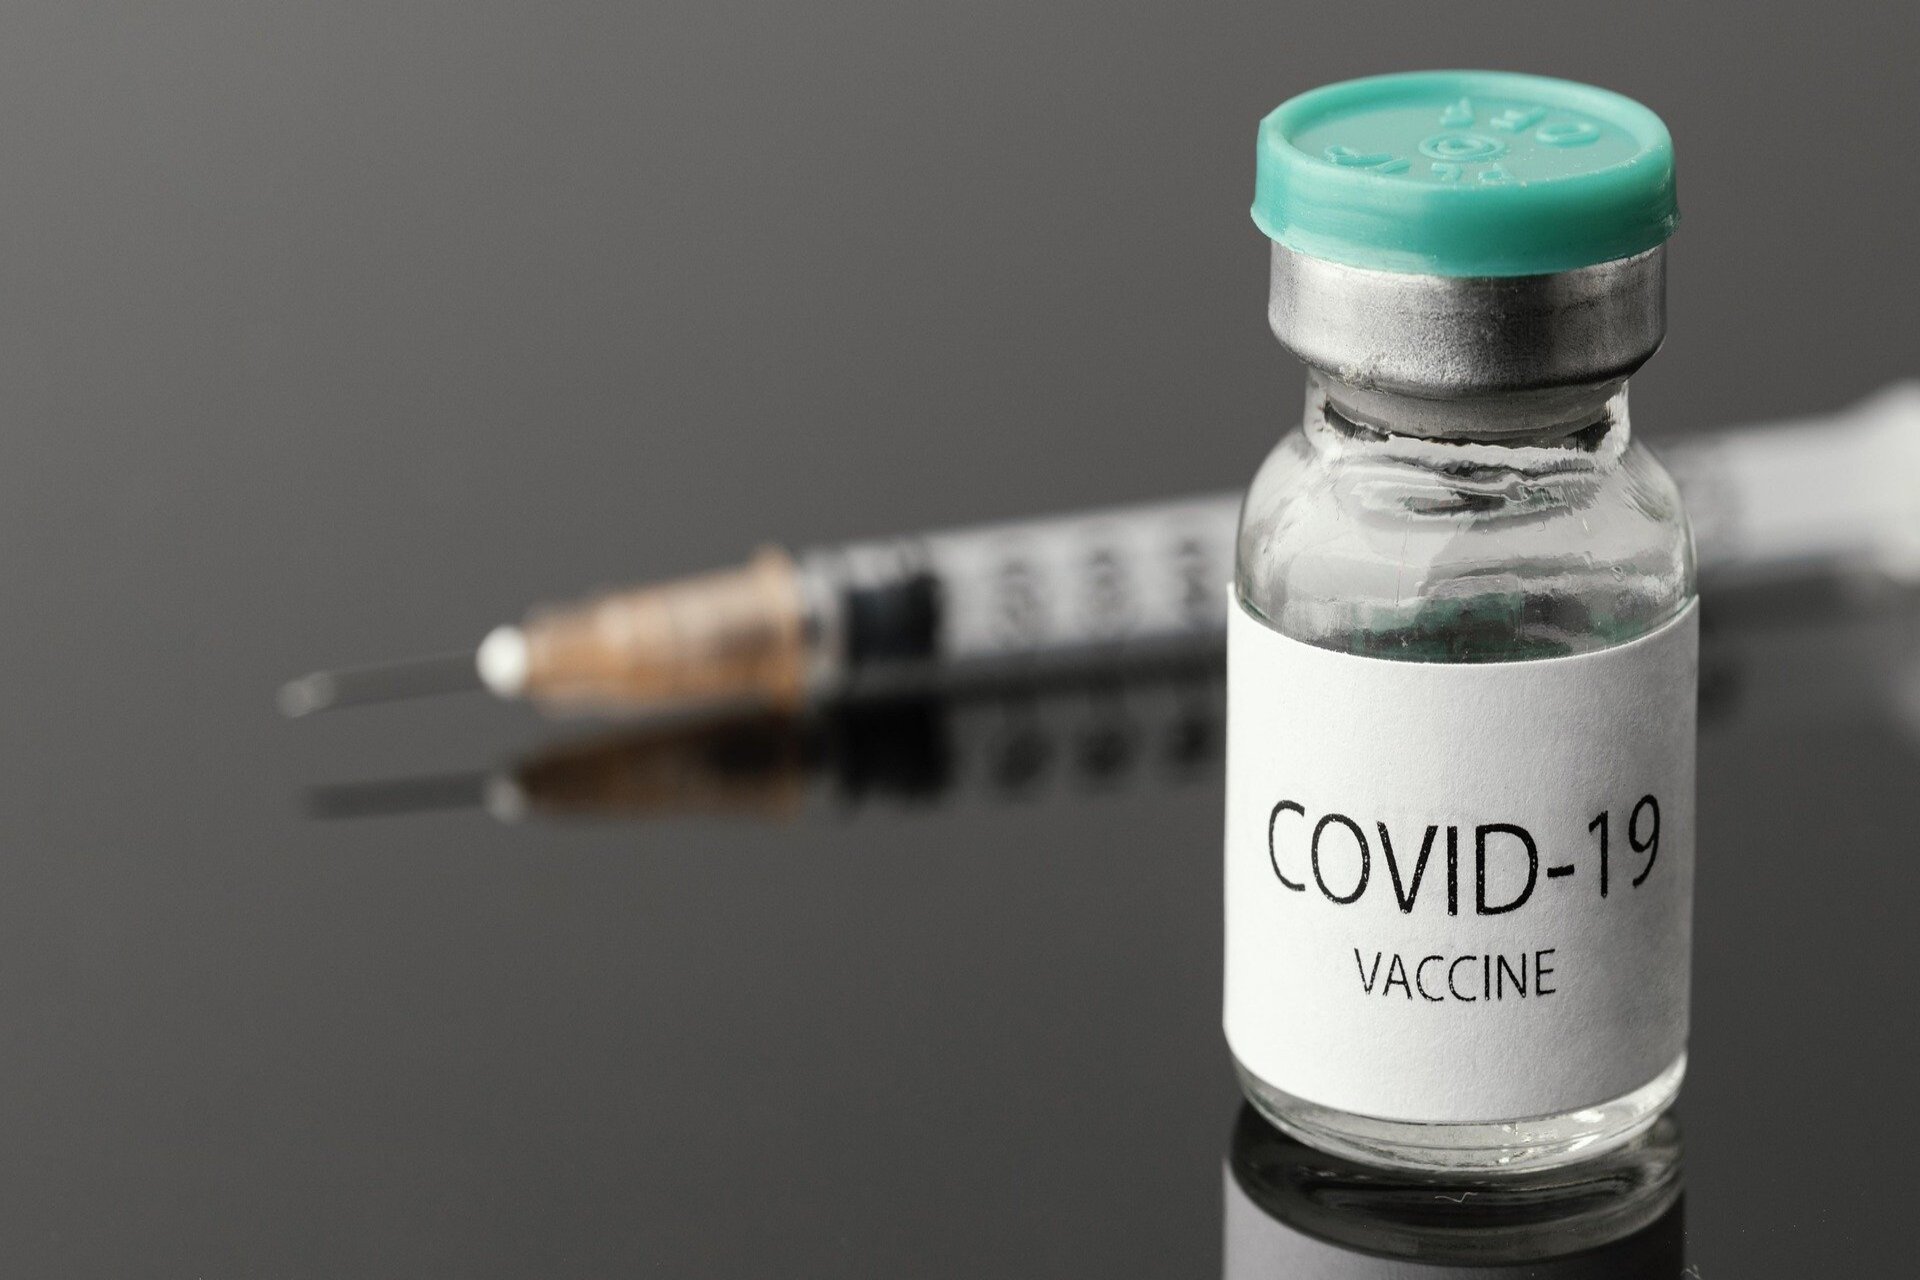 vaccini anti covid-19 in farmacia